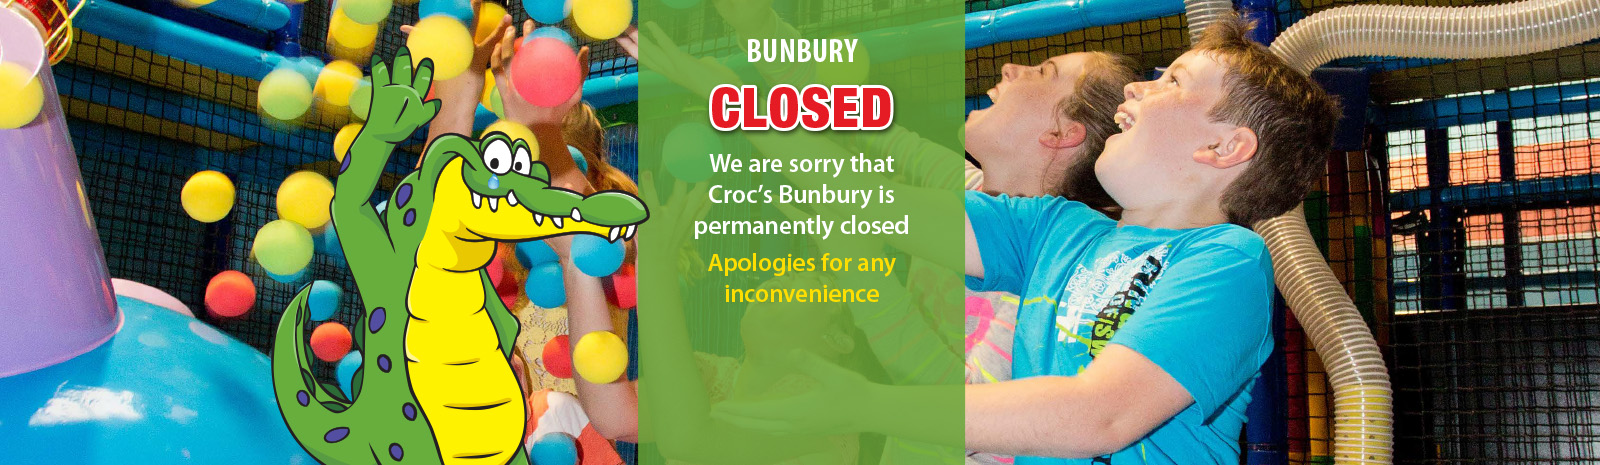 bunbury-closed